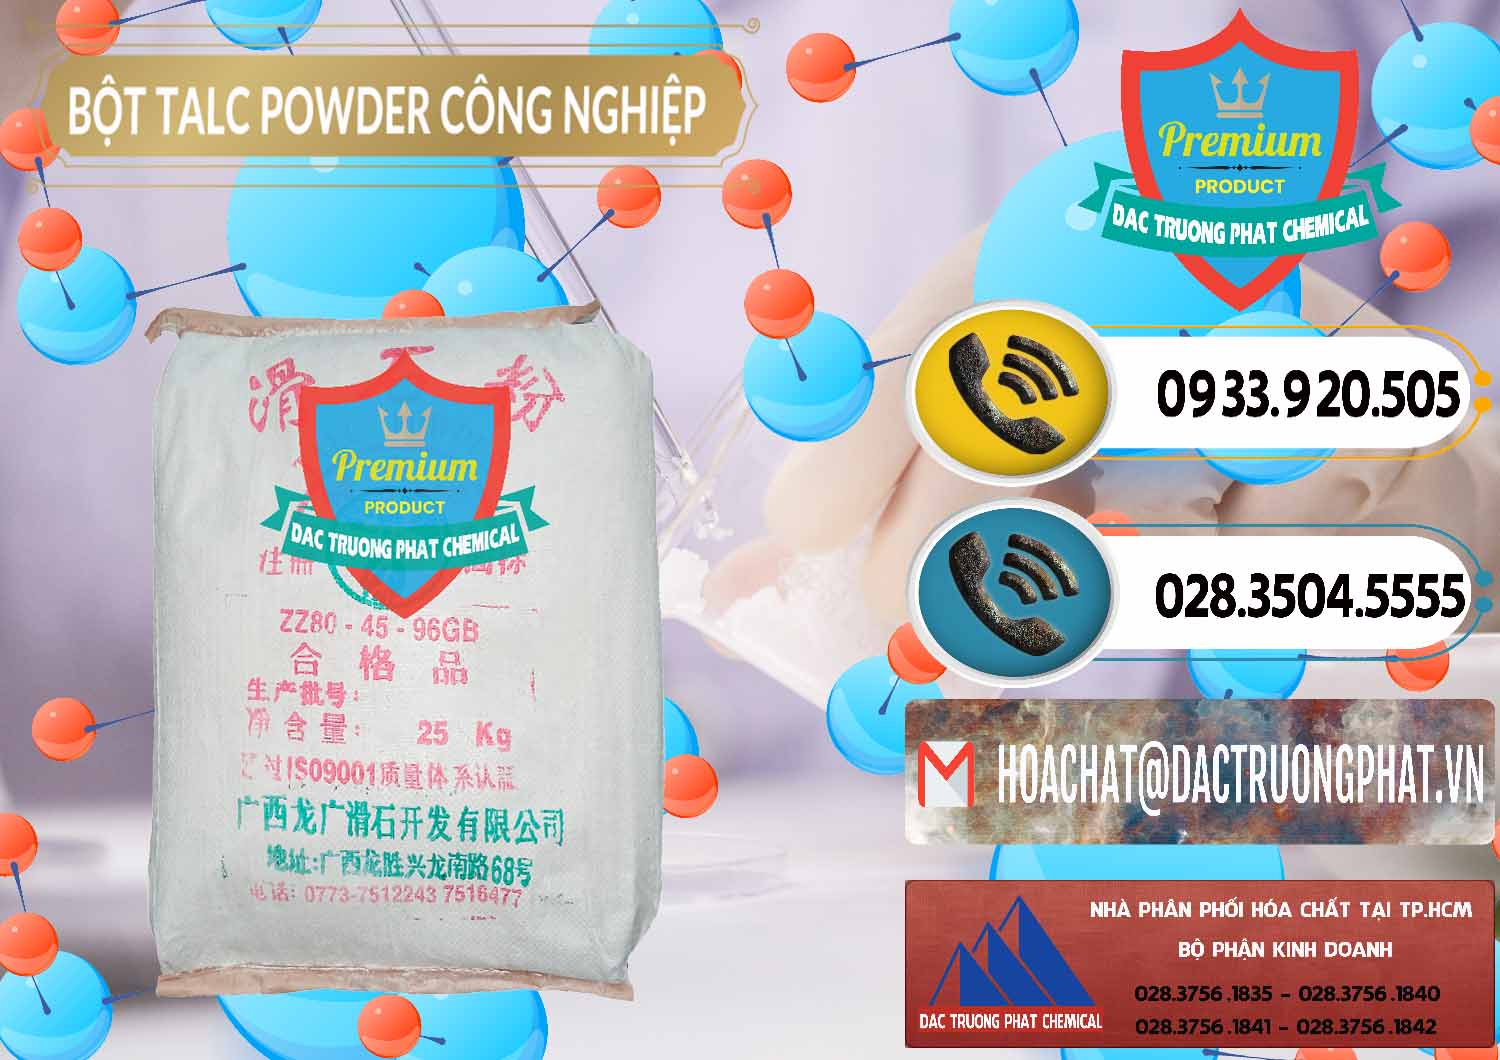 Cty nhập khẩu ( bán ) Bột Talc Powder Công Nghiệp Trung Quốc China - 0037 - Đơn vị nhập khẩu & cung cấp hóa chất tại TP.HCM - hoachatdetnhuom.vn